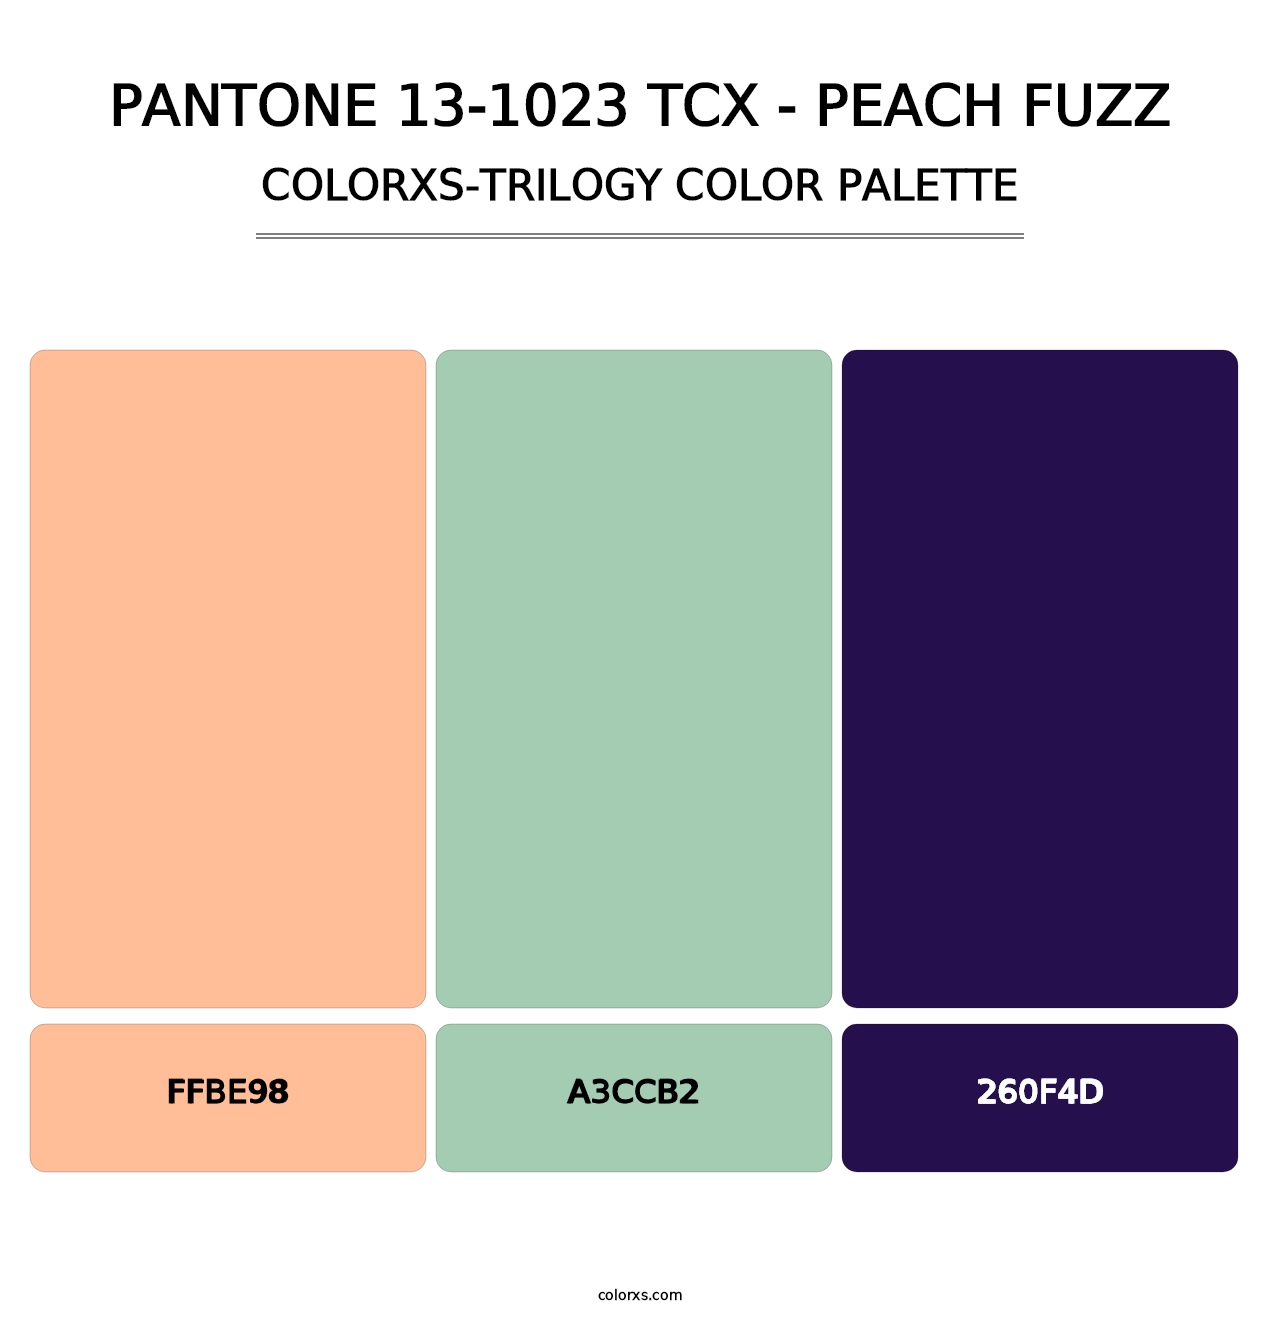 PANTONE 13-1023 TCX - Peach Fuzz - Colorxs Trilogy Palette